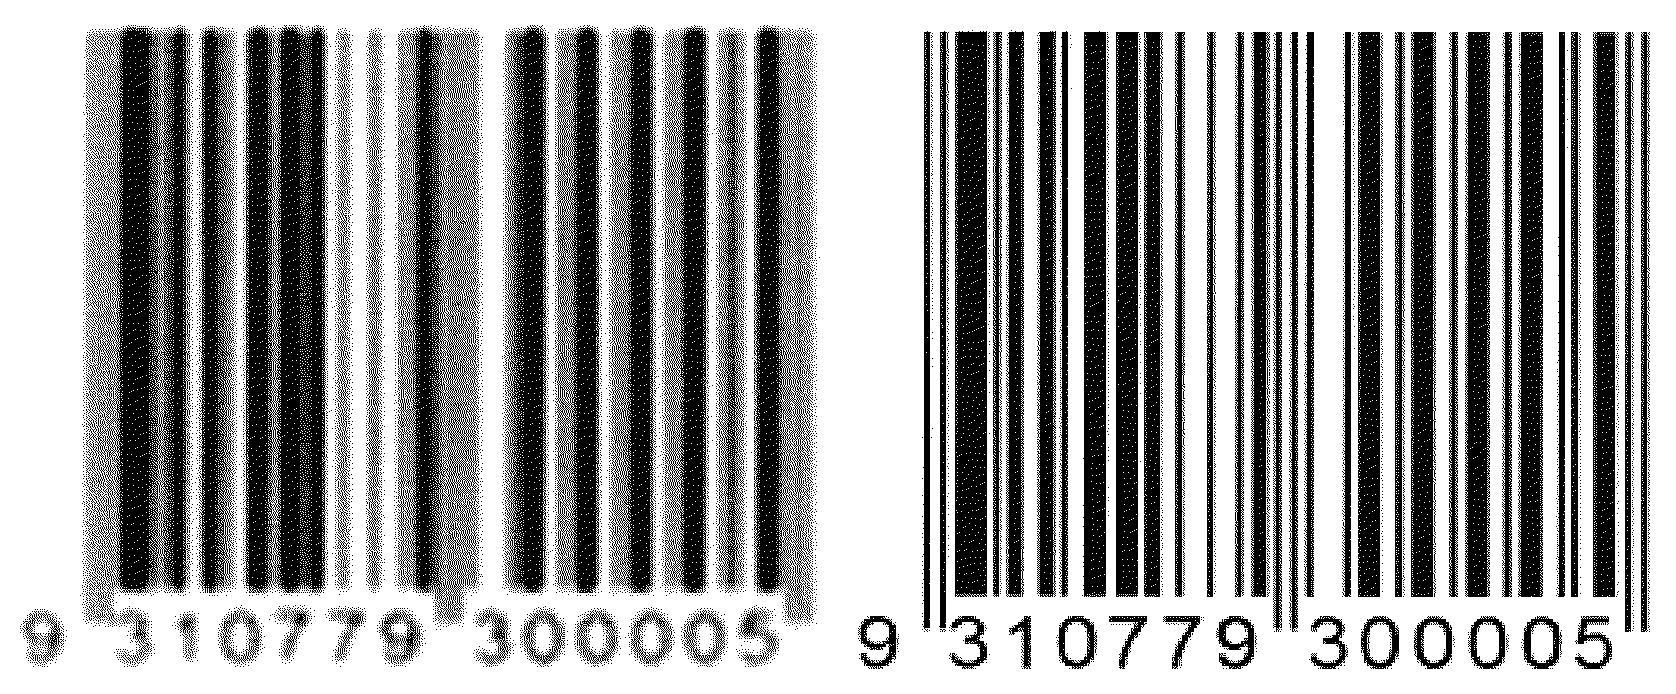 Method for restoration of blurred barcode images